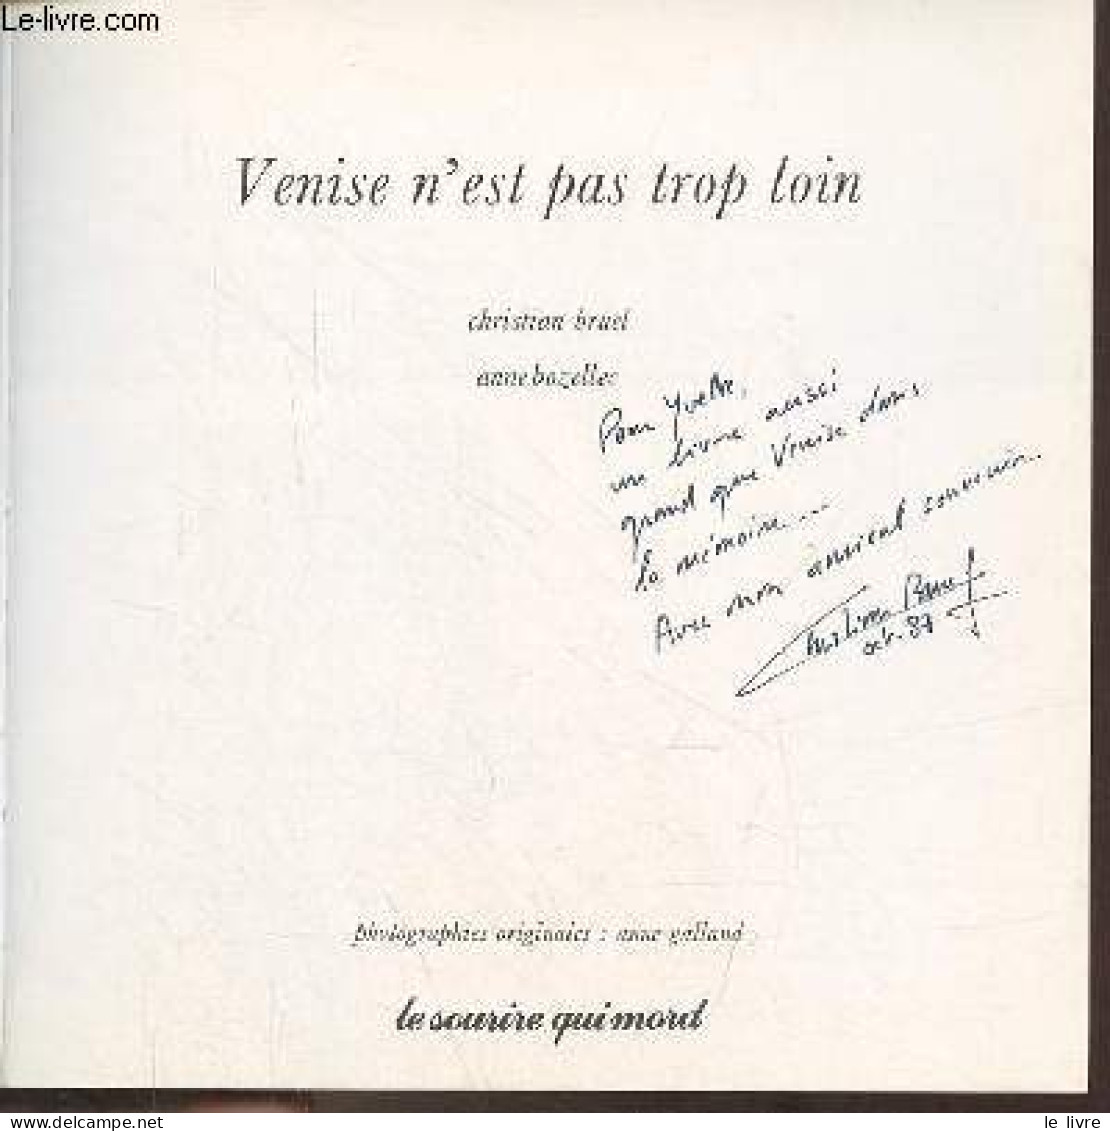 Venise N'est Pas Trop Loin - Dédicace De Christian Bruel. - Bruel Christian & Bozellec Anne - 1986 - Libros Autografiados